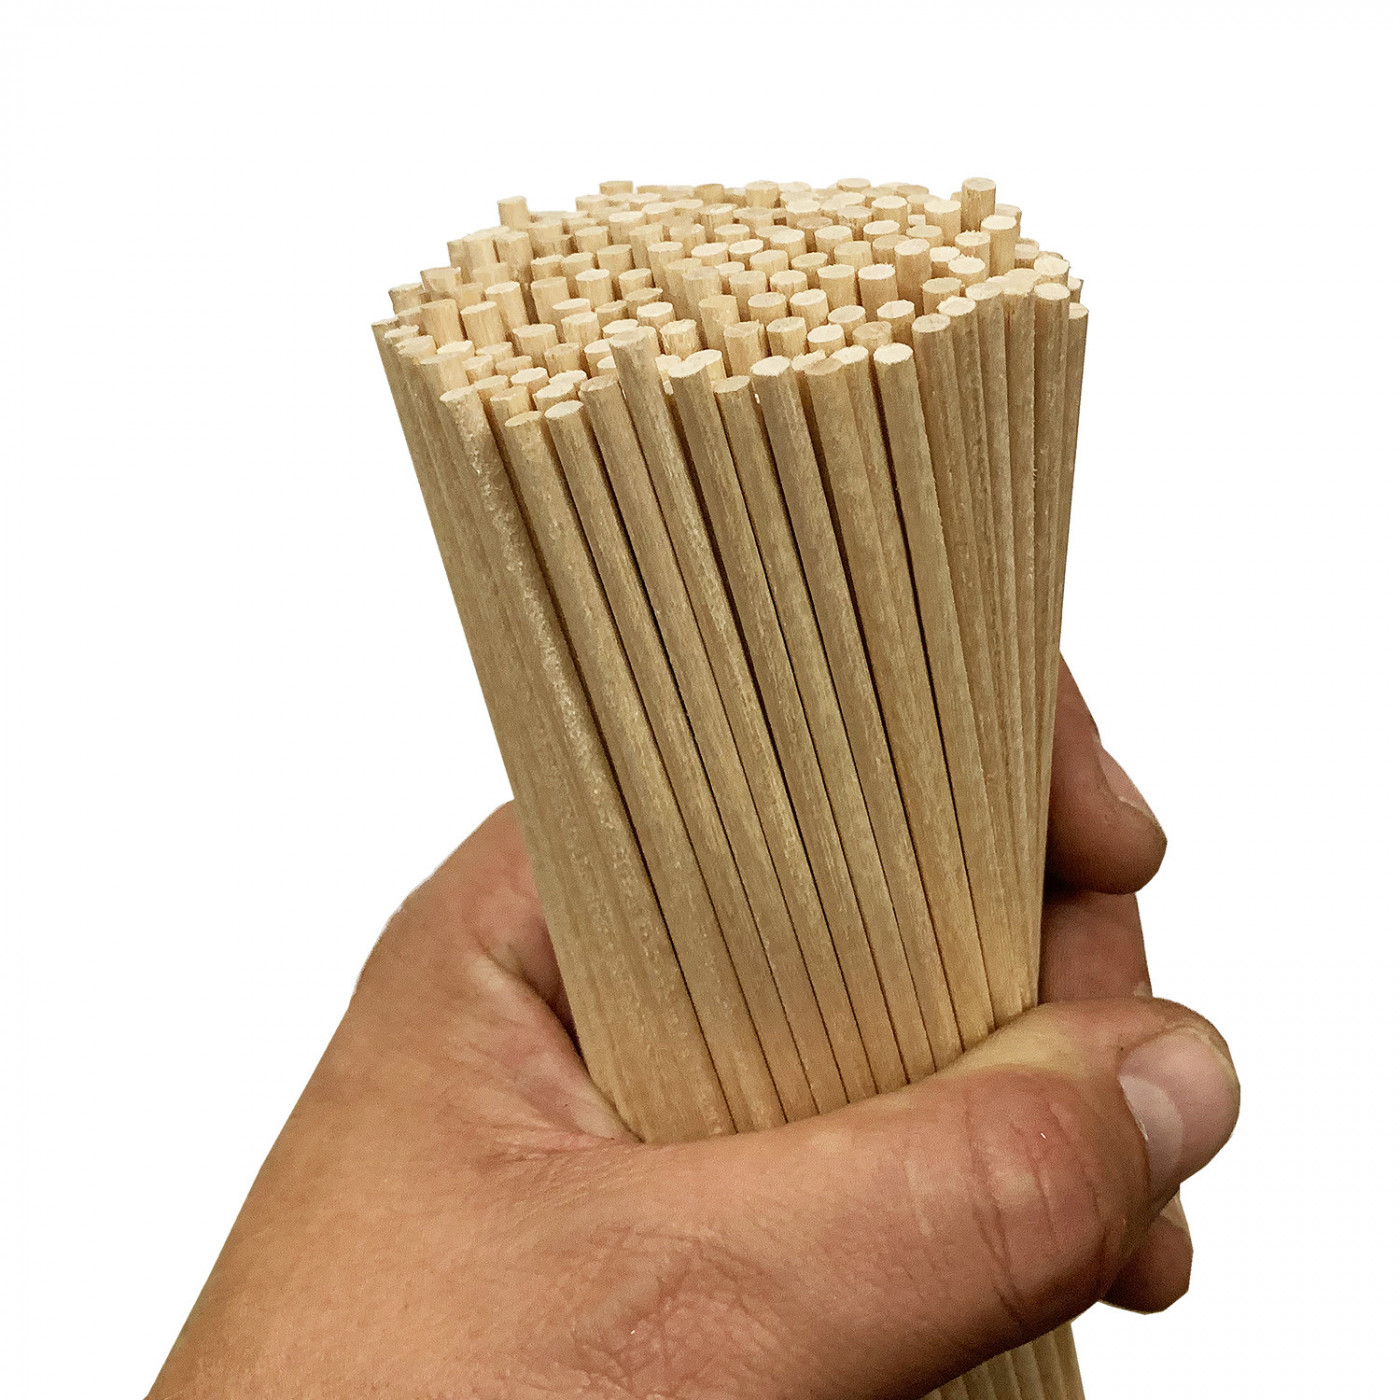 Set of 200 wooden sticks (4 mm x 30 cm, birch wood, pointed)